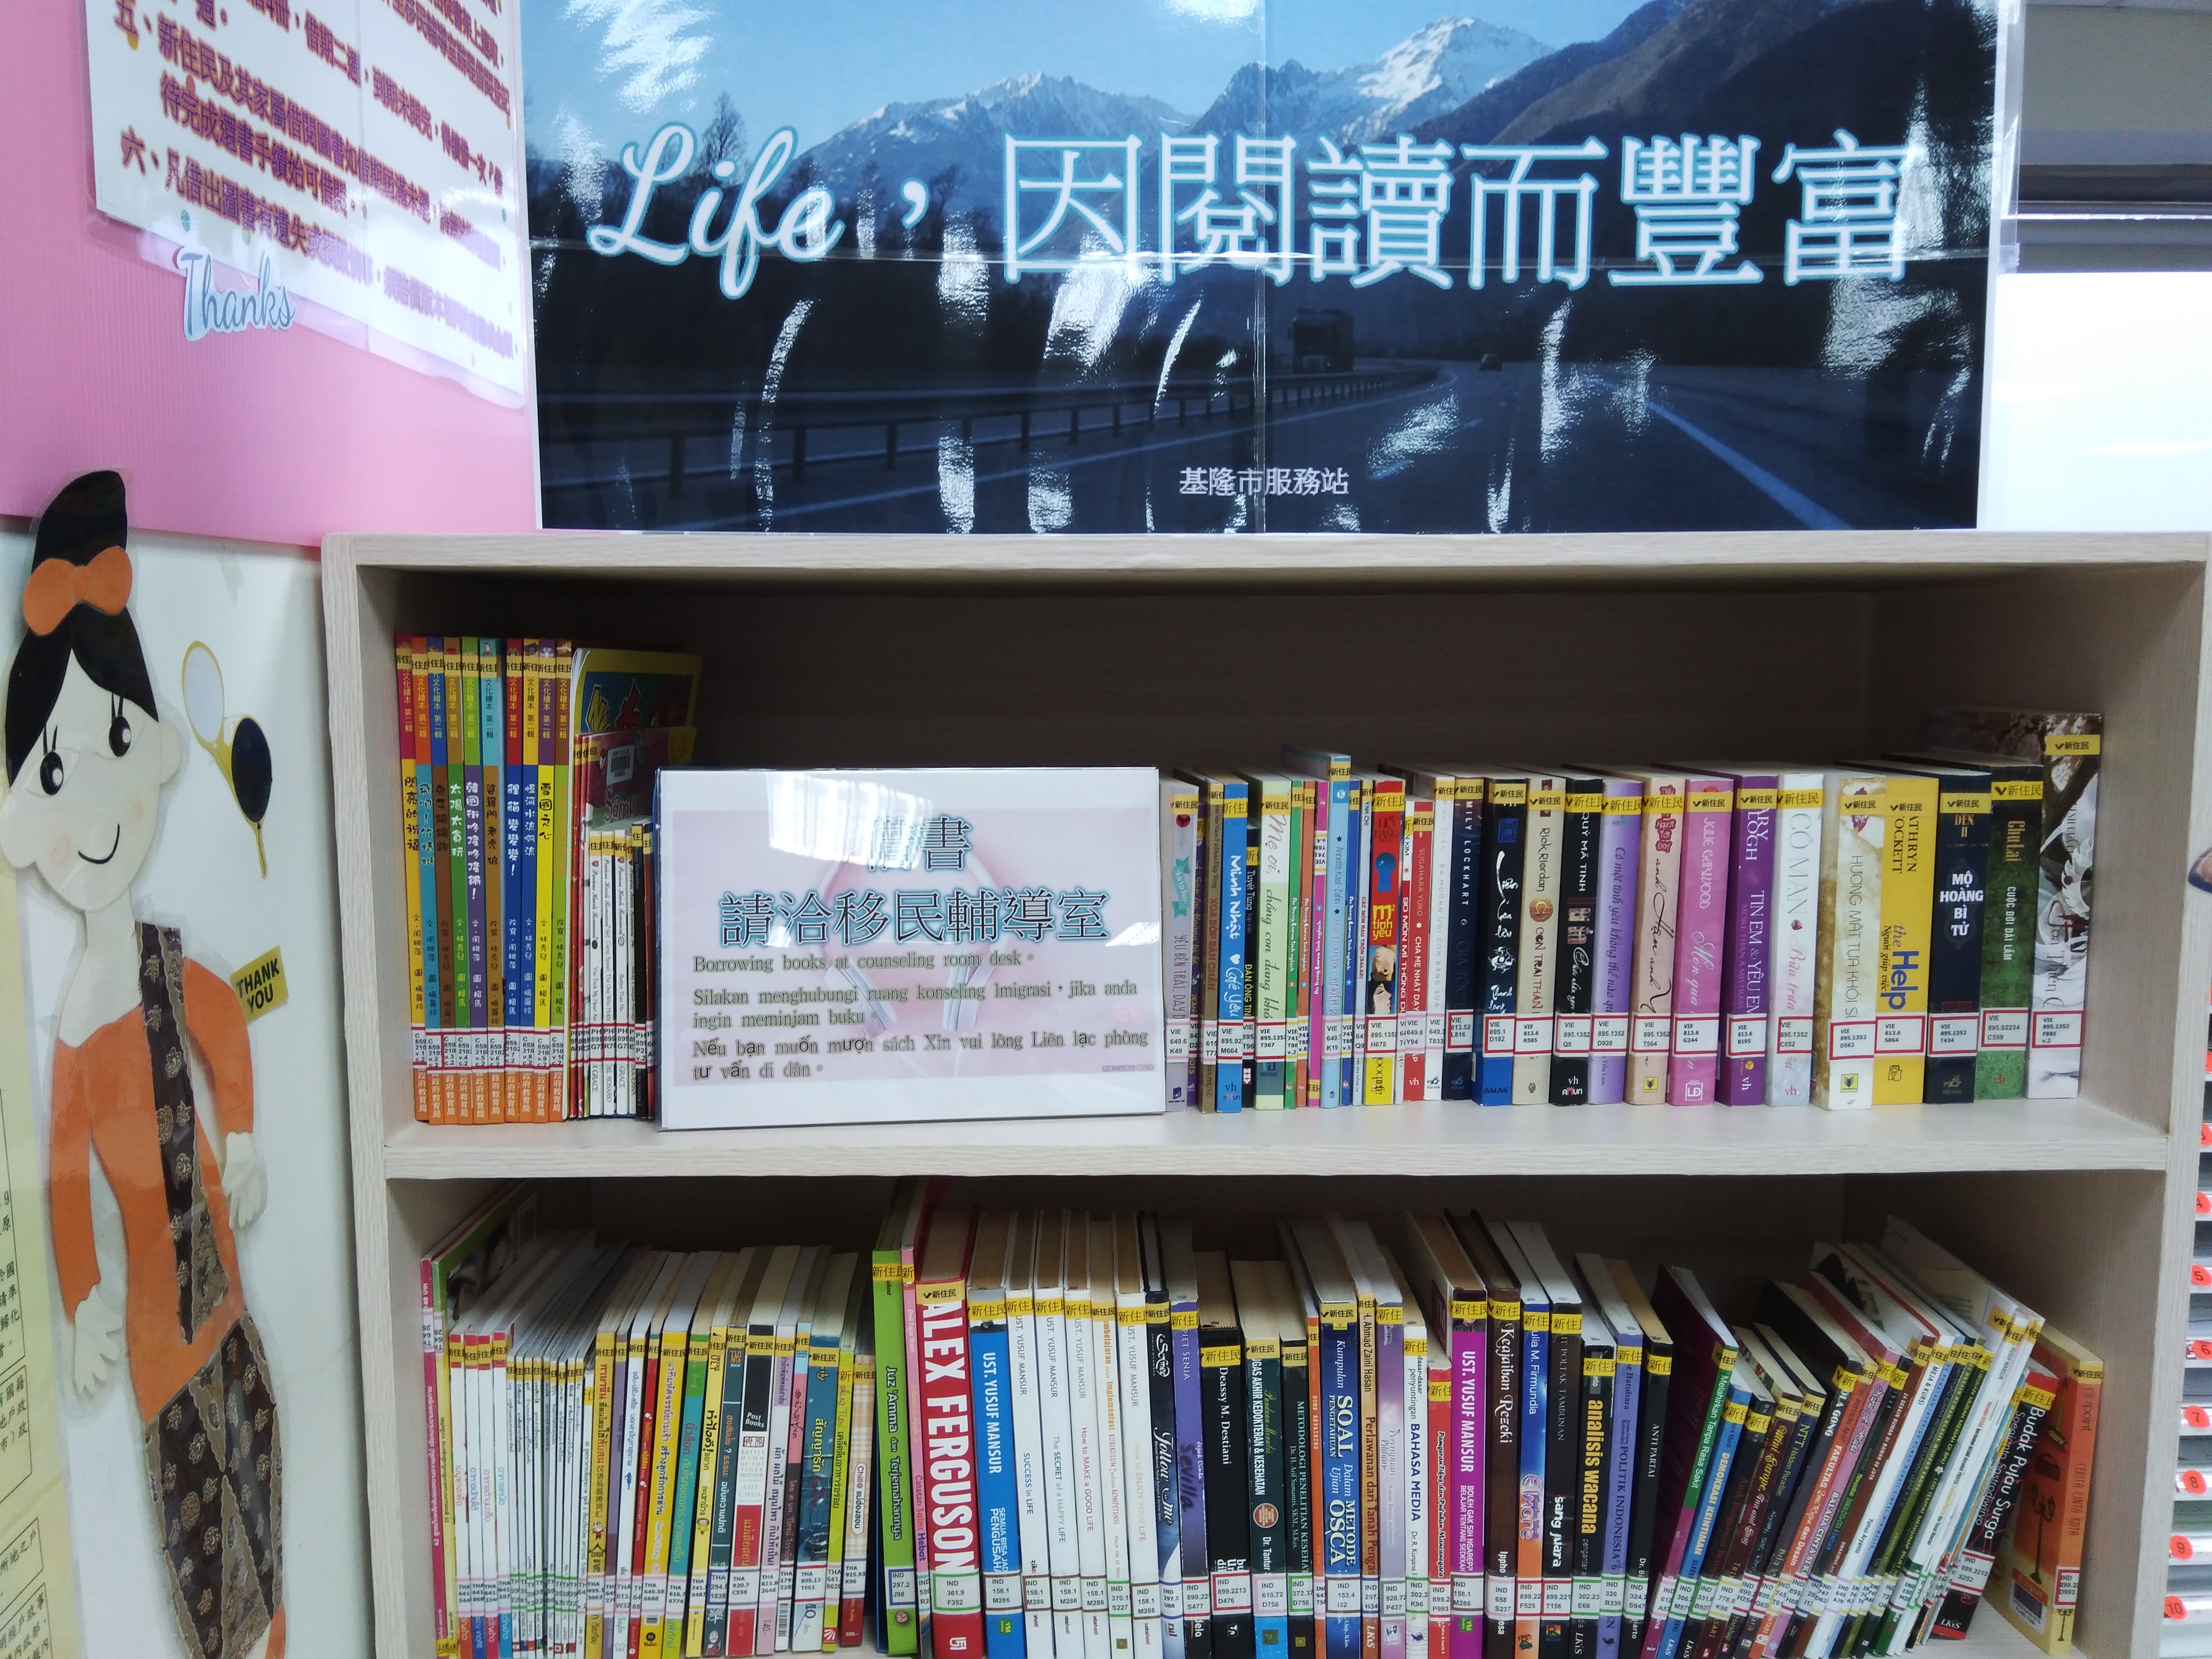 移民署基隆市服務站新住民母語(越南、泰國、菲律賓及印尼等)圖書櫃上架囉!!歡迎新住民朋友辦理借閱。